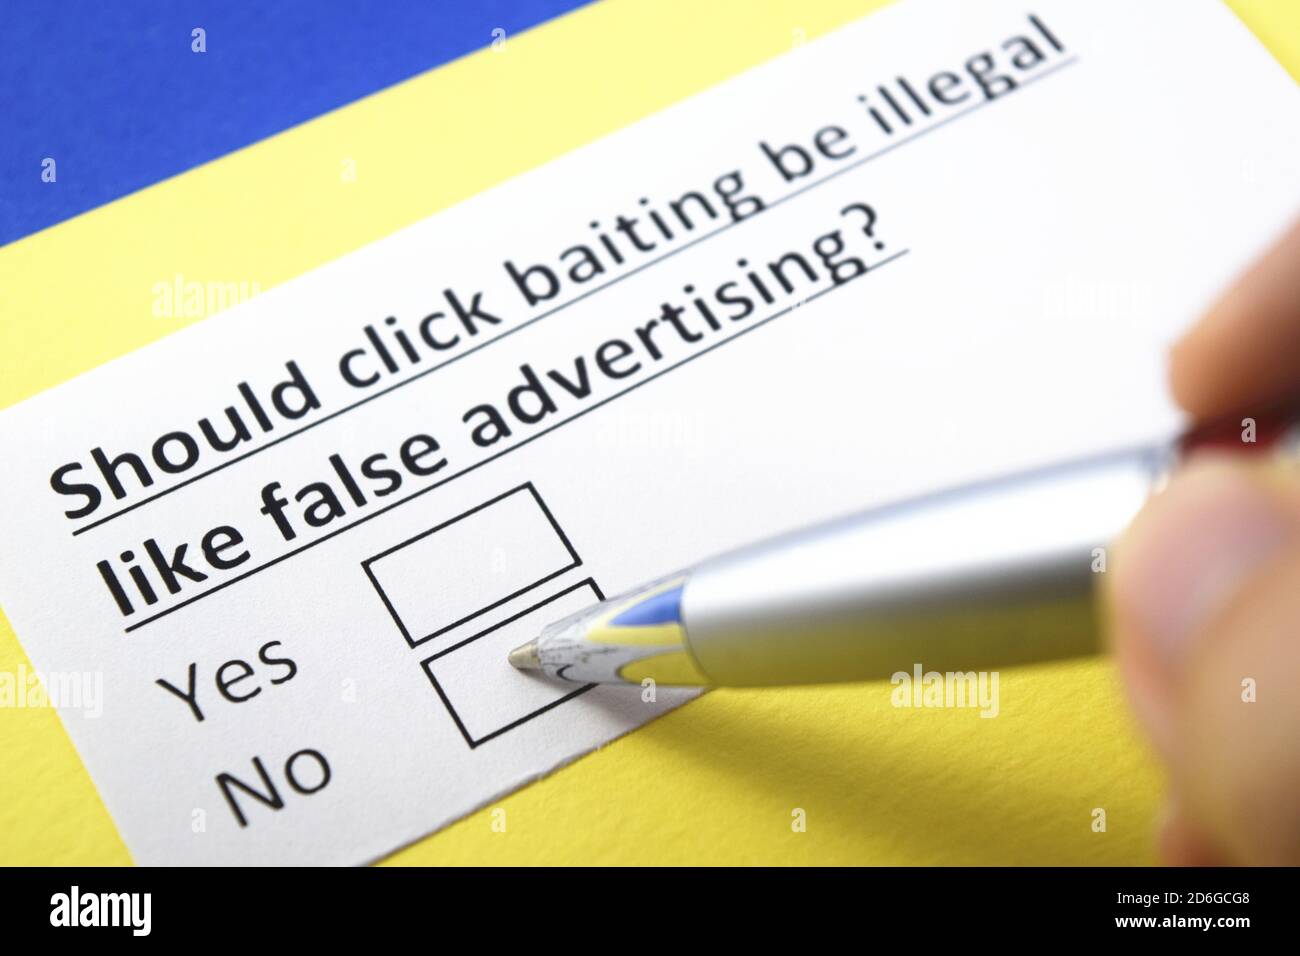 Sollte Klickköderei illegal sein wie falsche Werbung? Ja oder Nein? Stockfoto